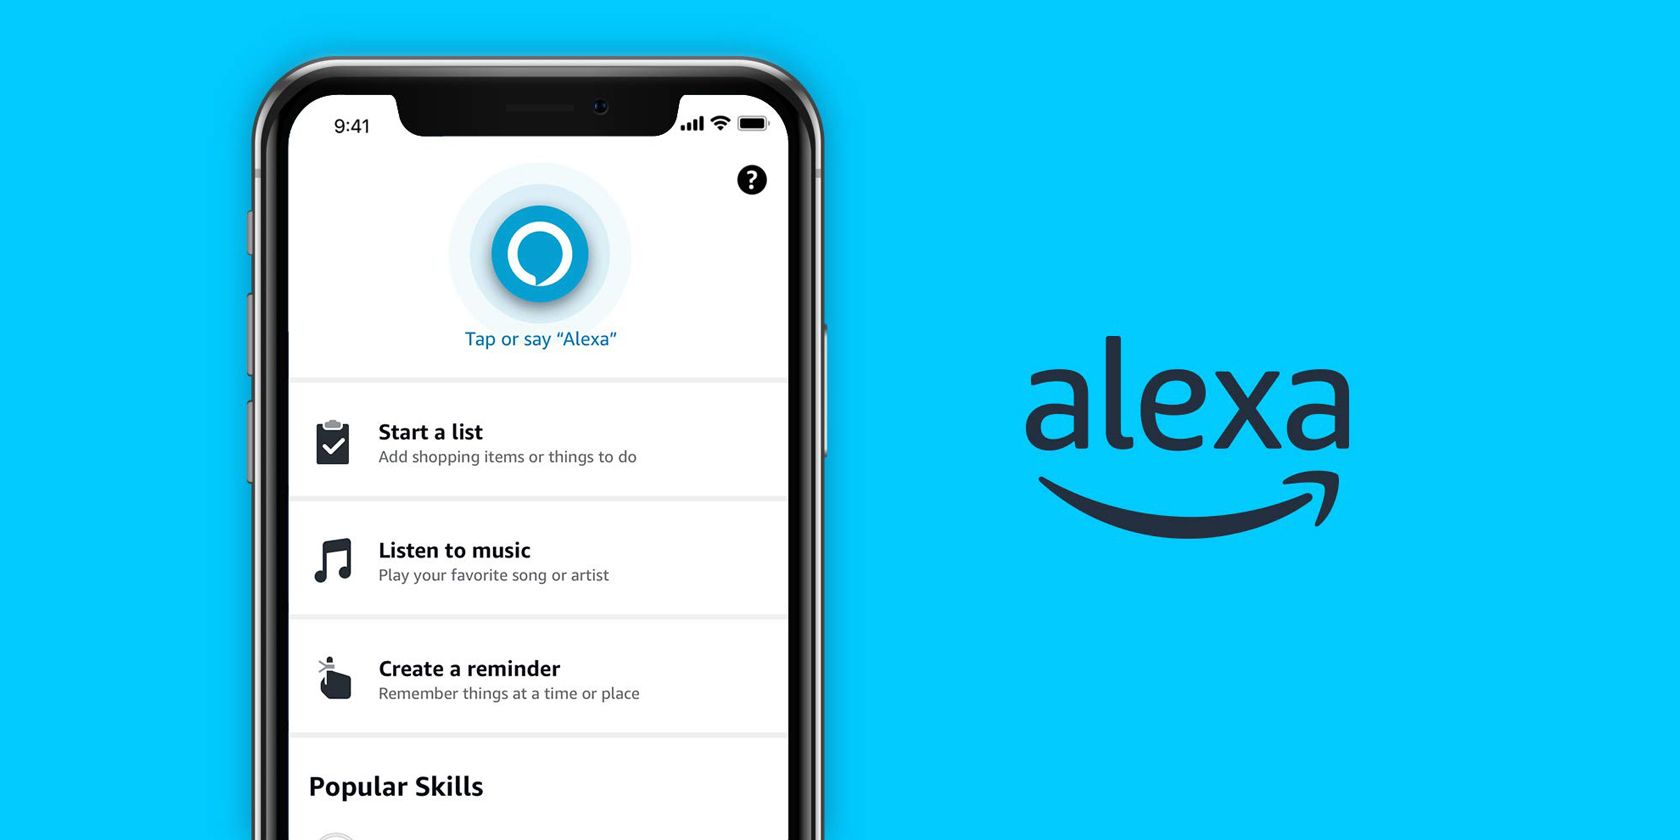 How to Use Amazon Alexa From the Alexa App